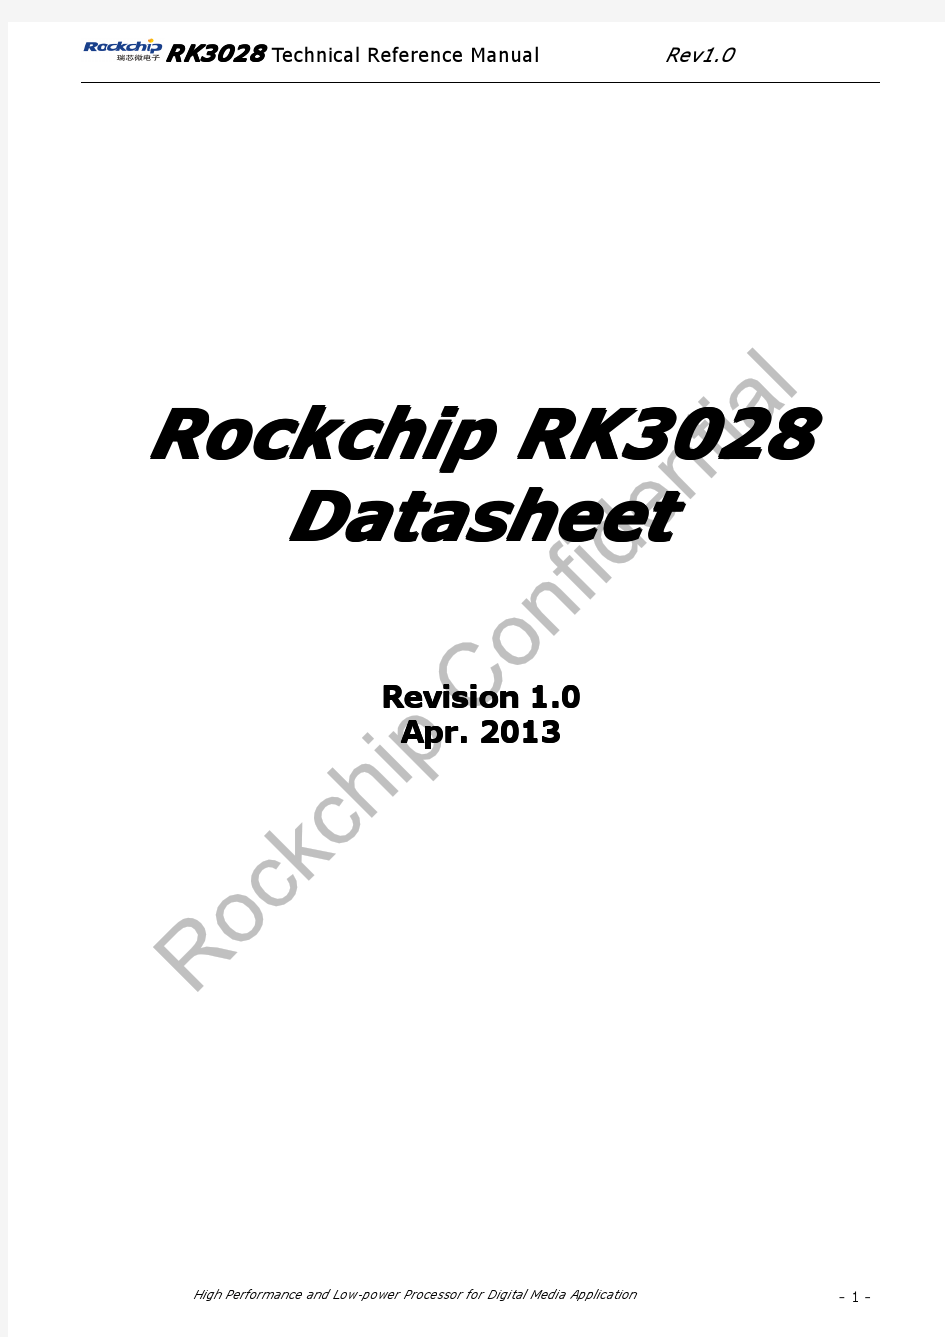 Rockchip RK3028 brief v1.0